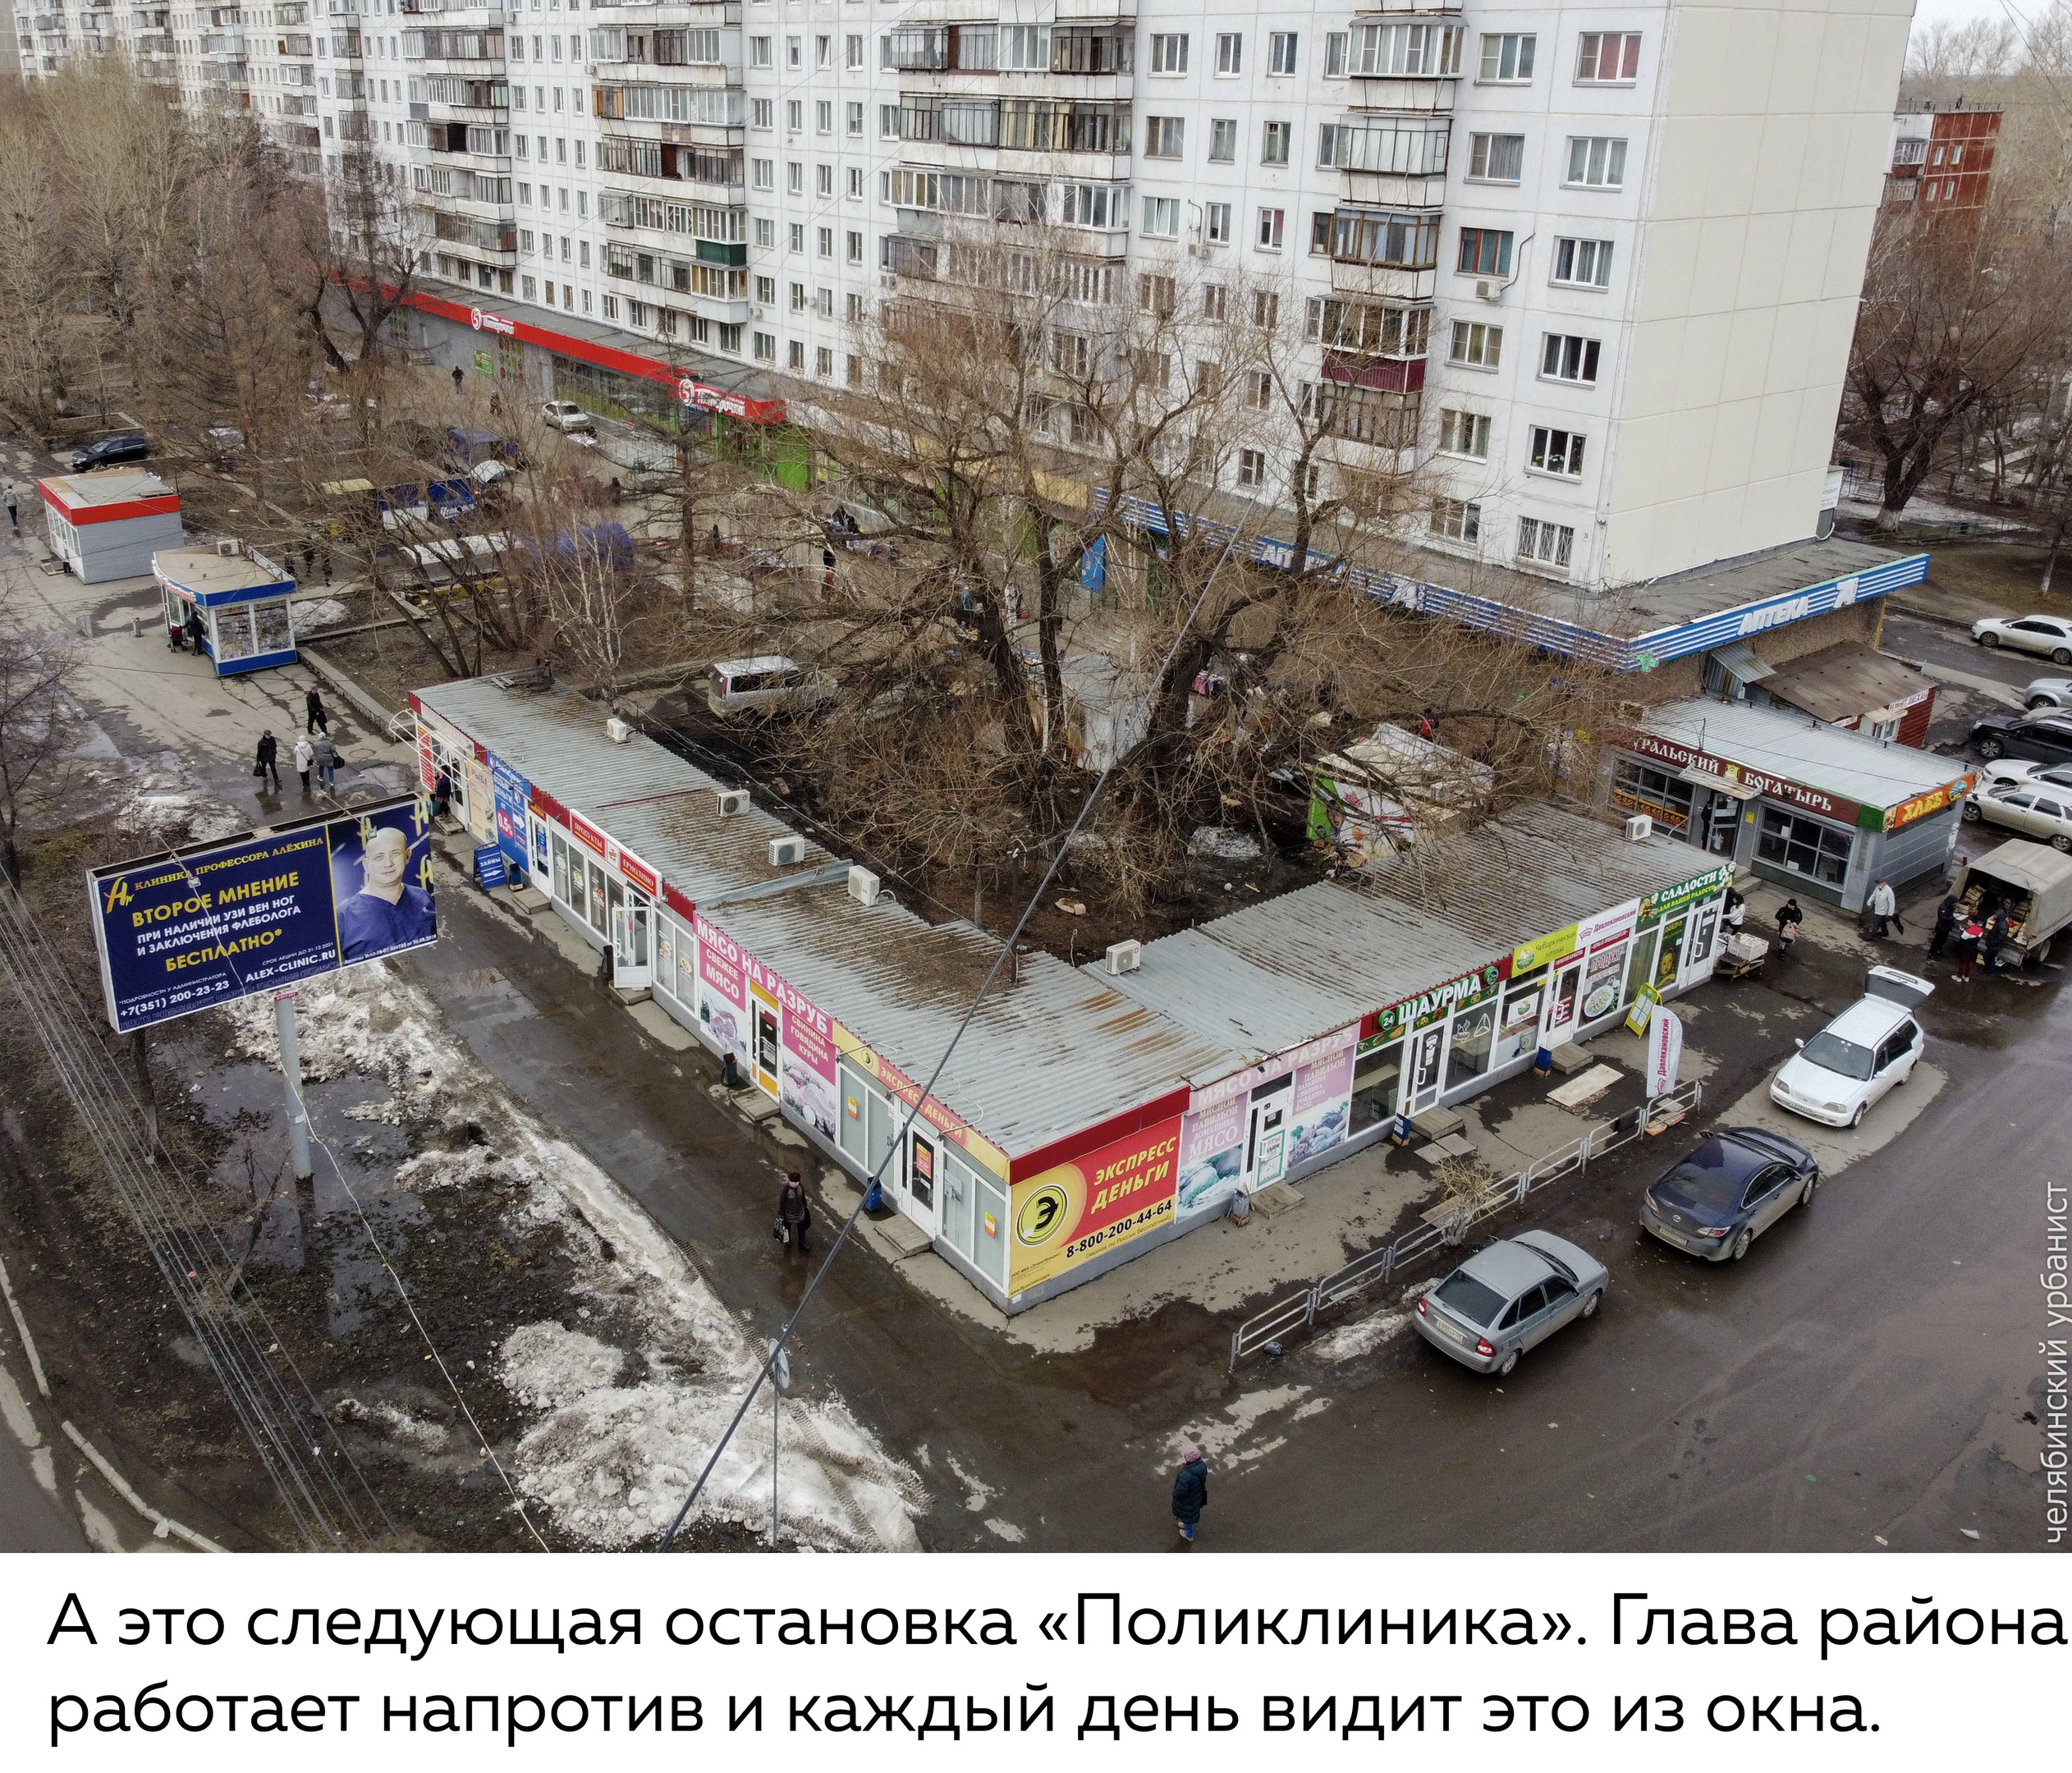 А это остановка «Поликлиника», напротив ларьков расположена администрация Курчатовского района